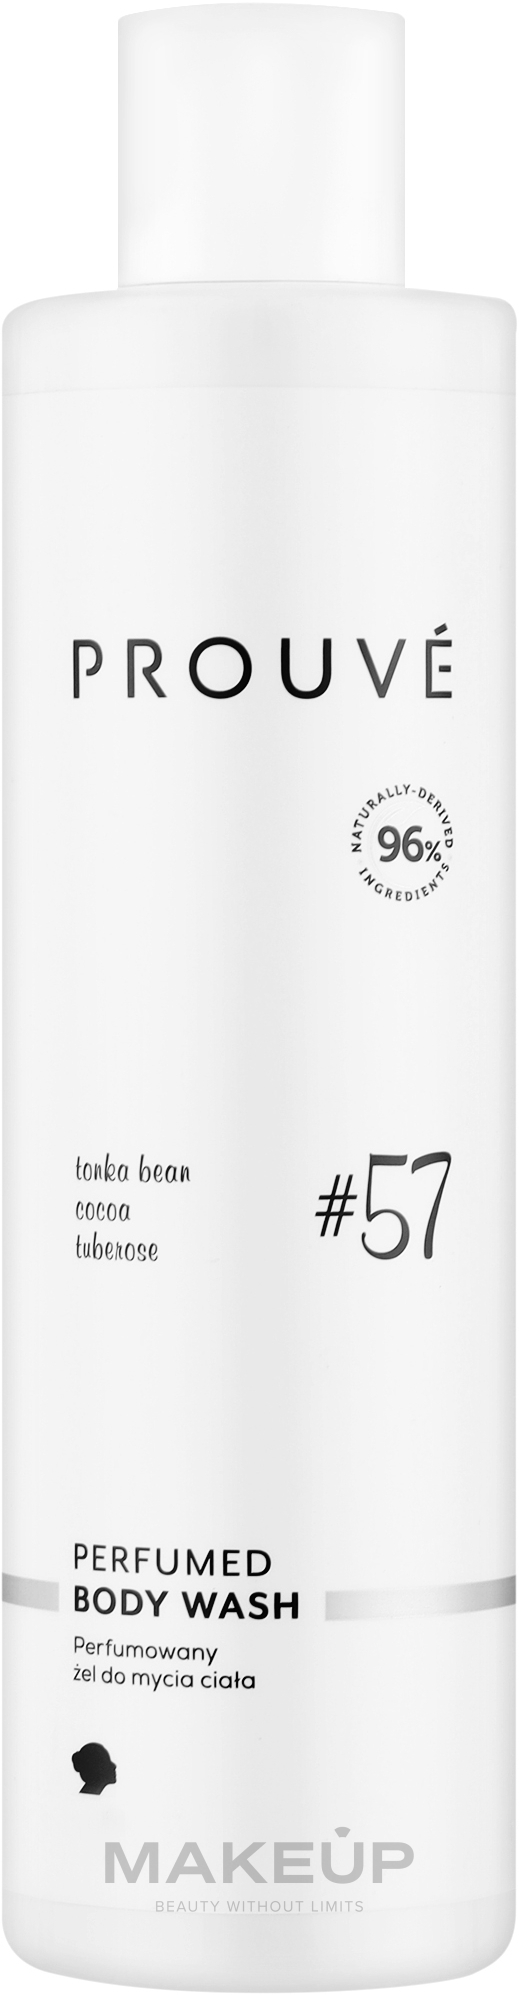 Prouve For Women №57 Perfumed Body Wash - Парфюмированный гель для мытья тела №57 для женщин — фото 250ml